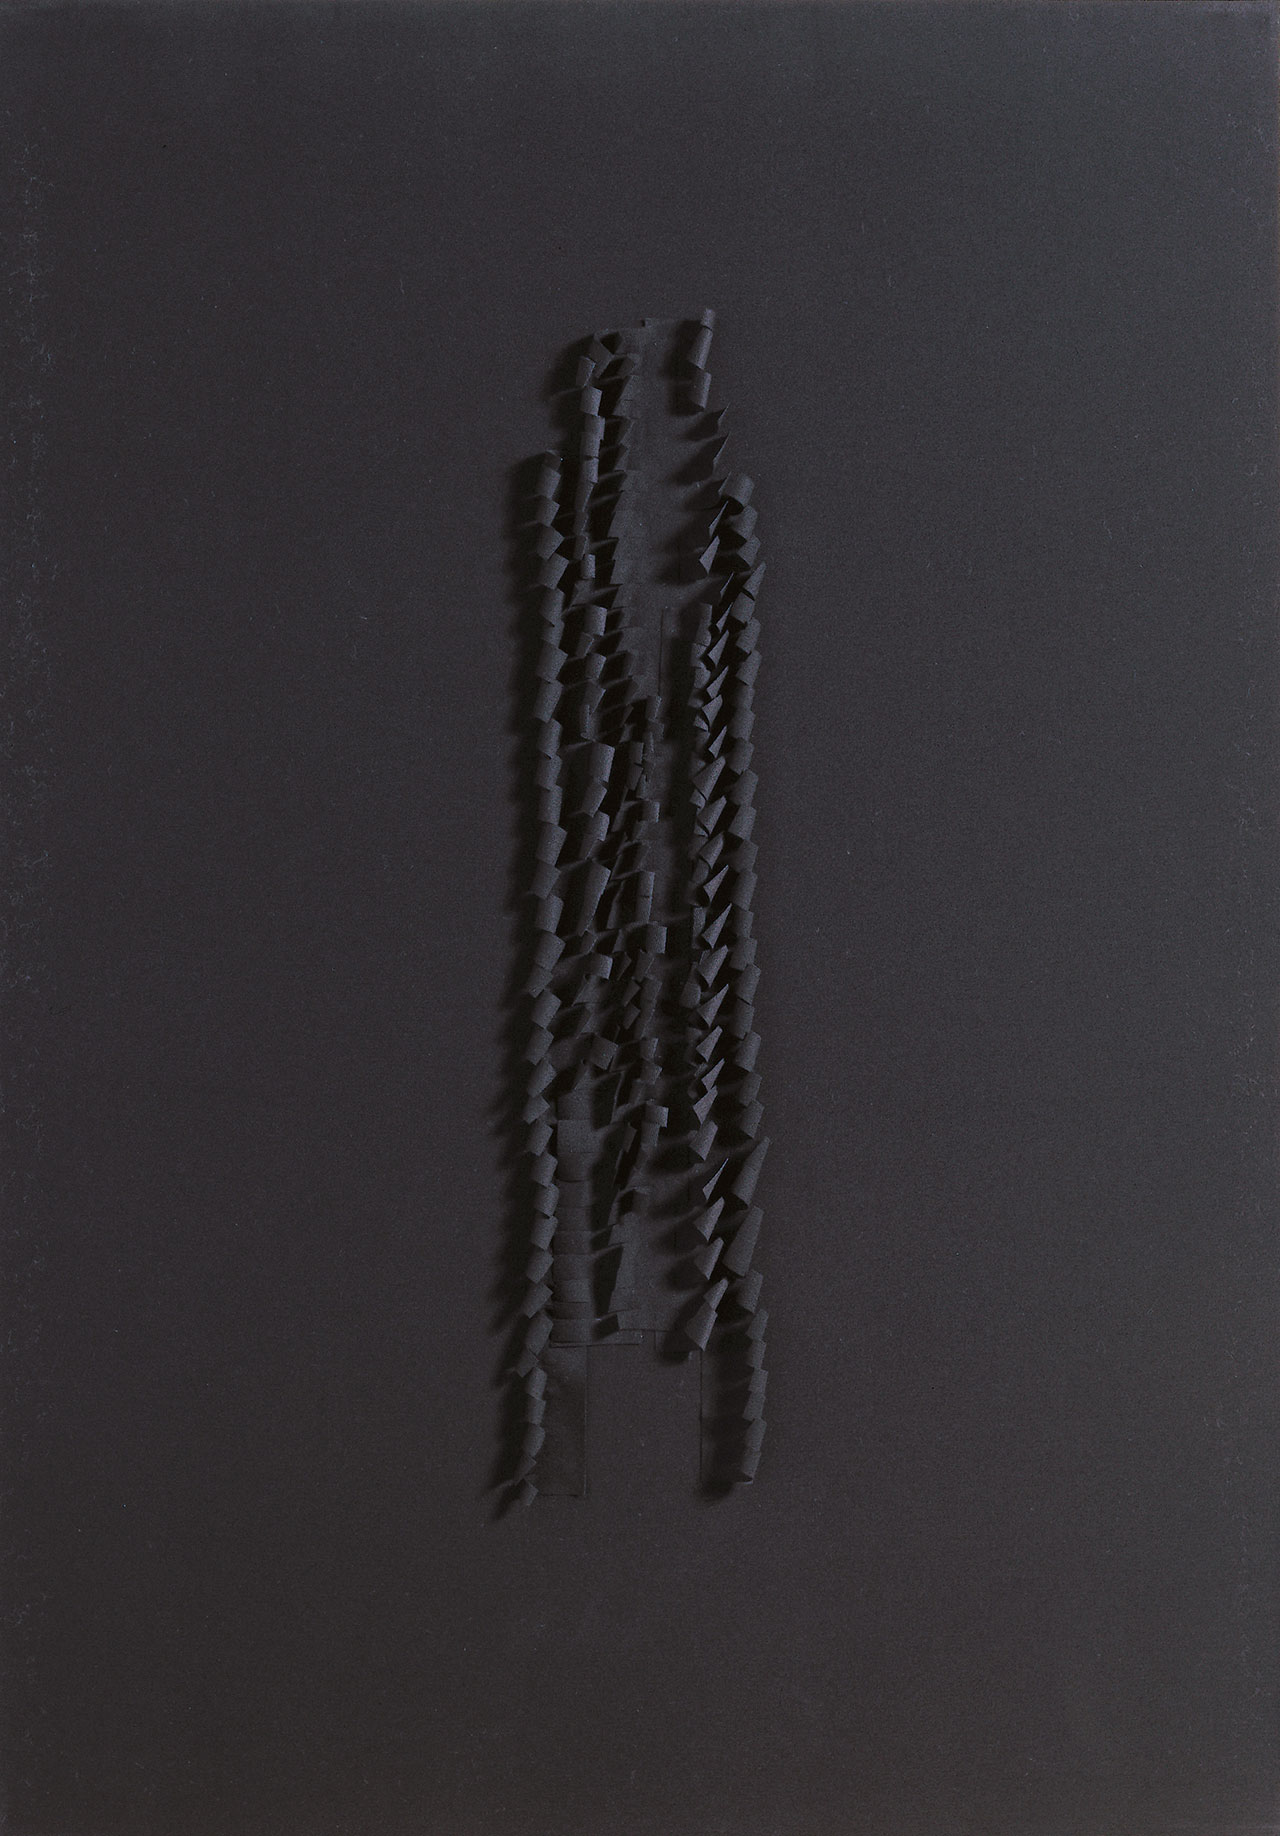 Solipsism-Black Cotton 84x59x3.5cm